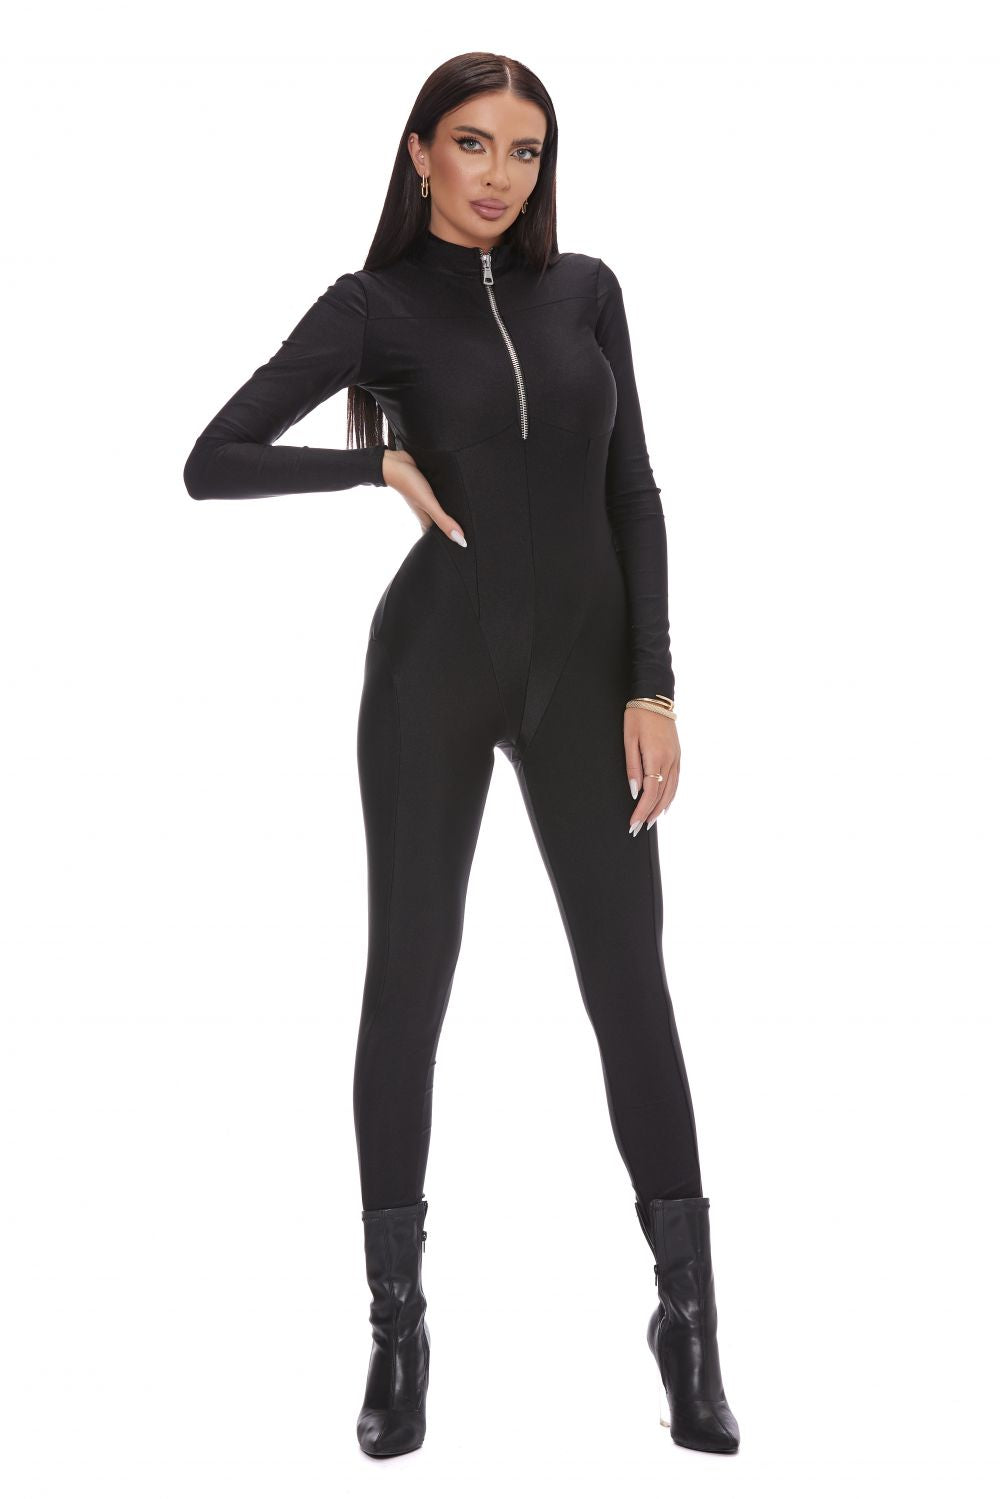 Elegant black jumpsuit for women by Torquato Bogas